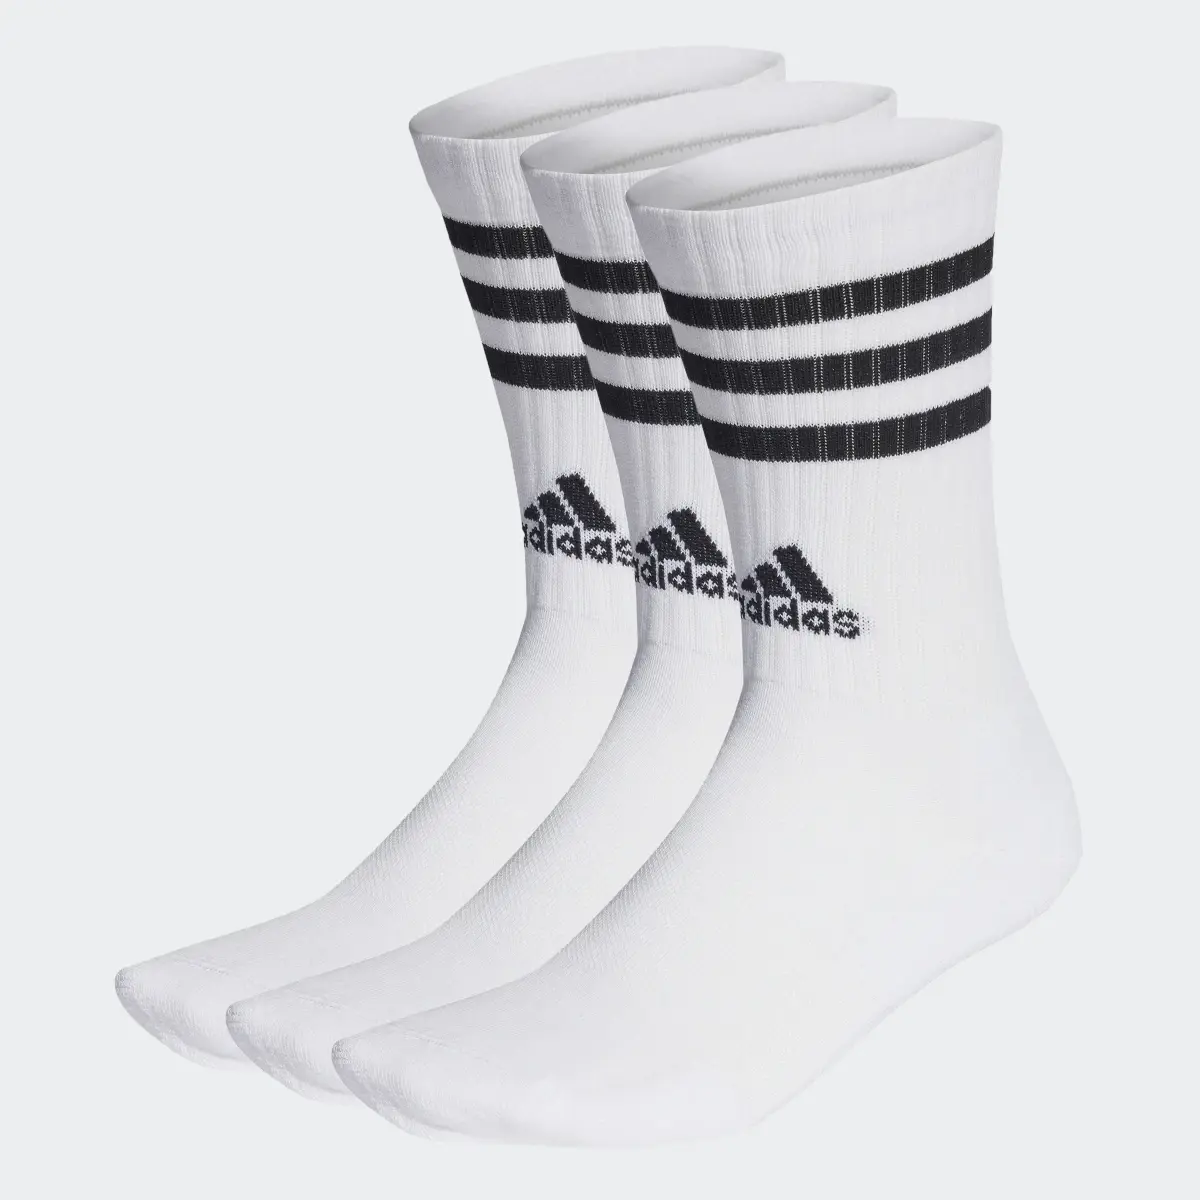 Adidas 3-Stripes Yastıklamalı Bilekli Çorap - 3 Çift. 1